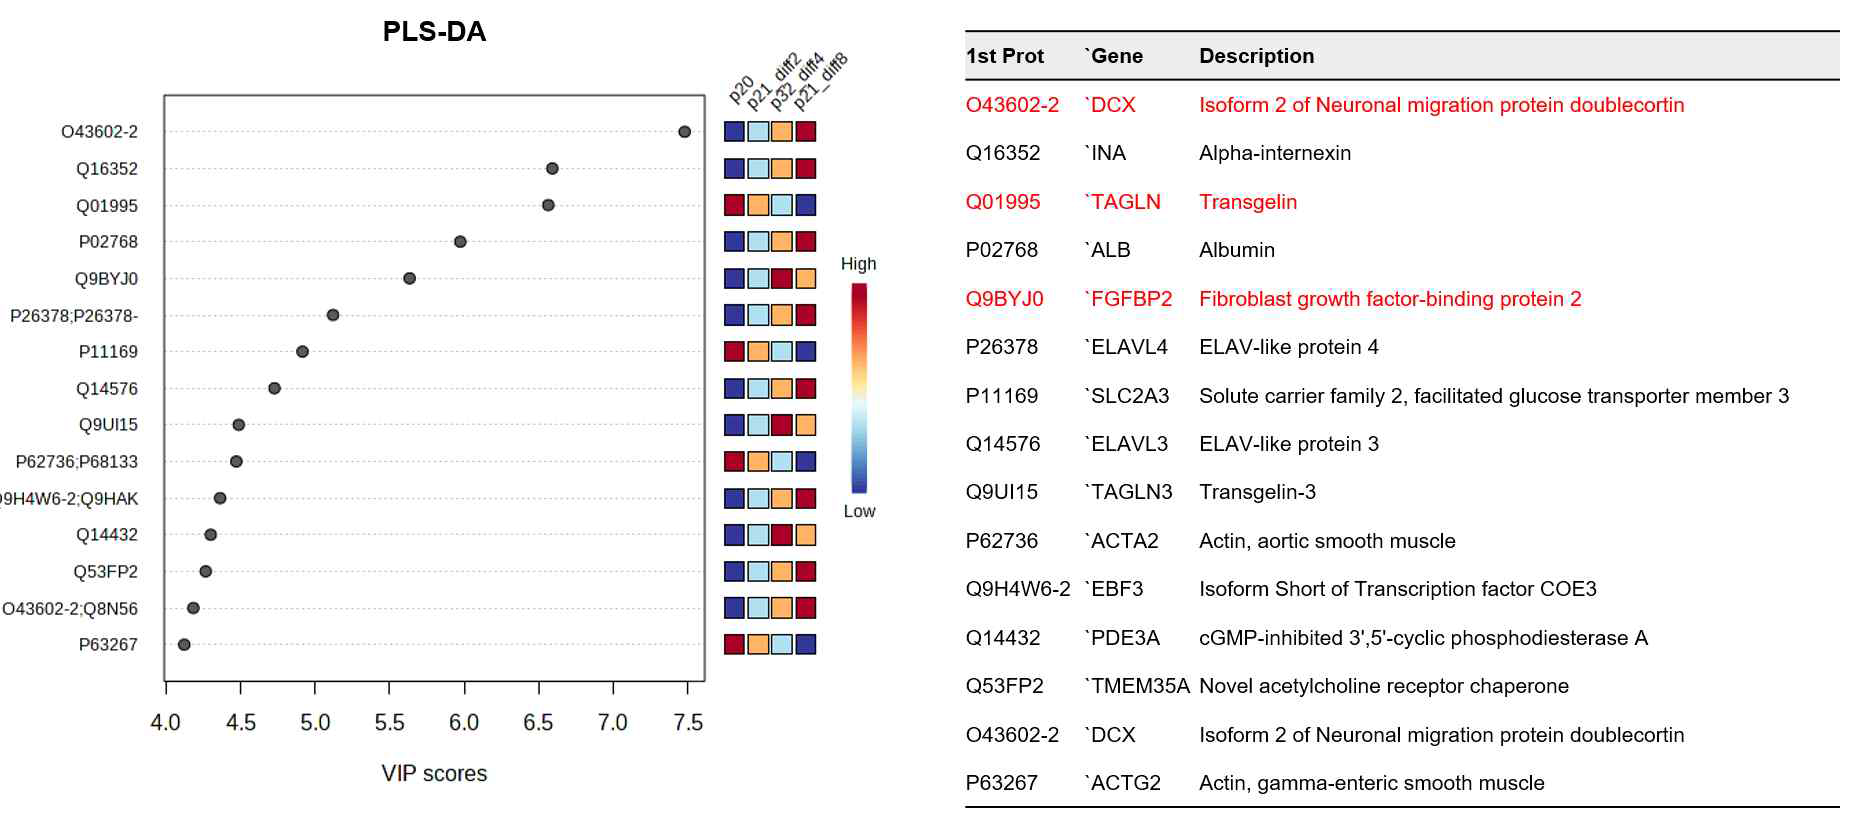 식별된 단백질들의 PLS-DA 결과 및 유의한 변화를 나타낸 단백질 결과